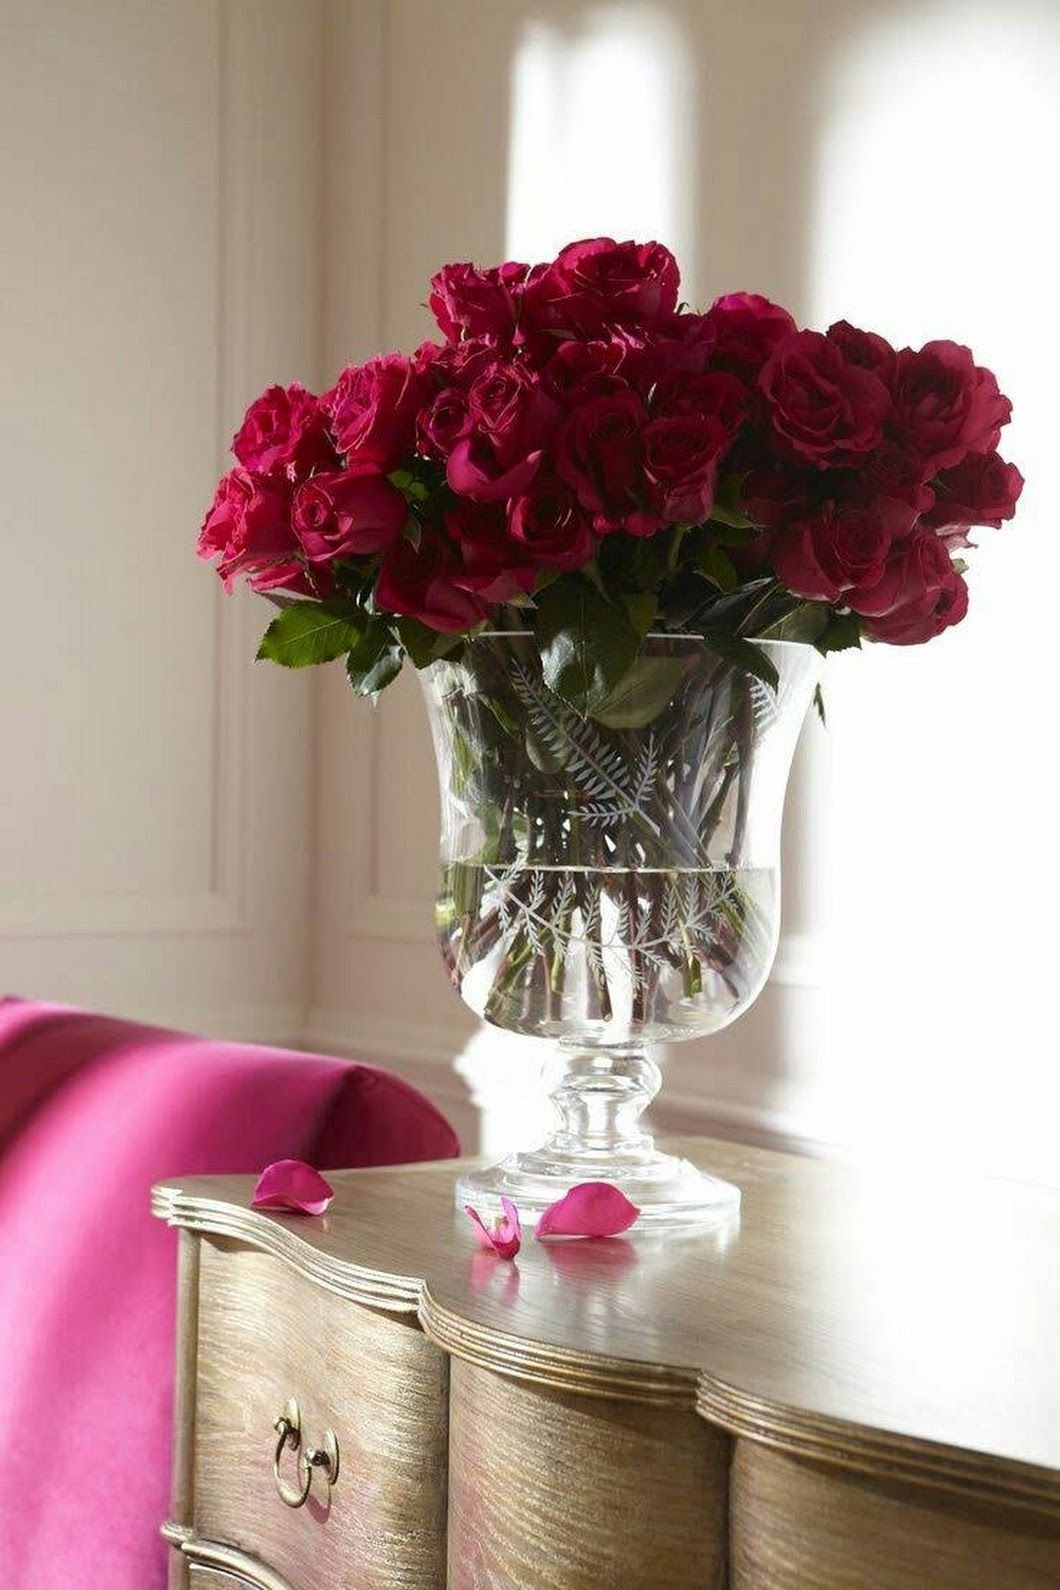 Букеты роз в вазе на столе. Цветы в вазе. Цветы в вазе на столе. Вазы с цветами в интерьере. Цветочки в вазе.